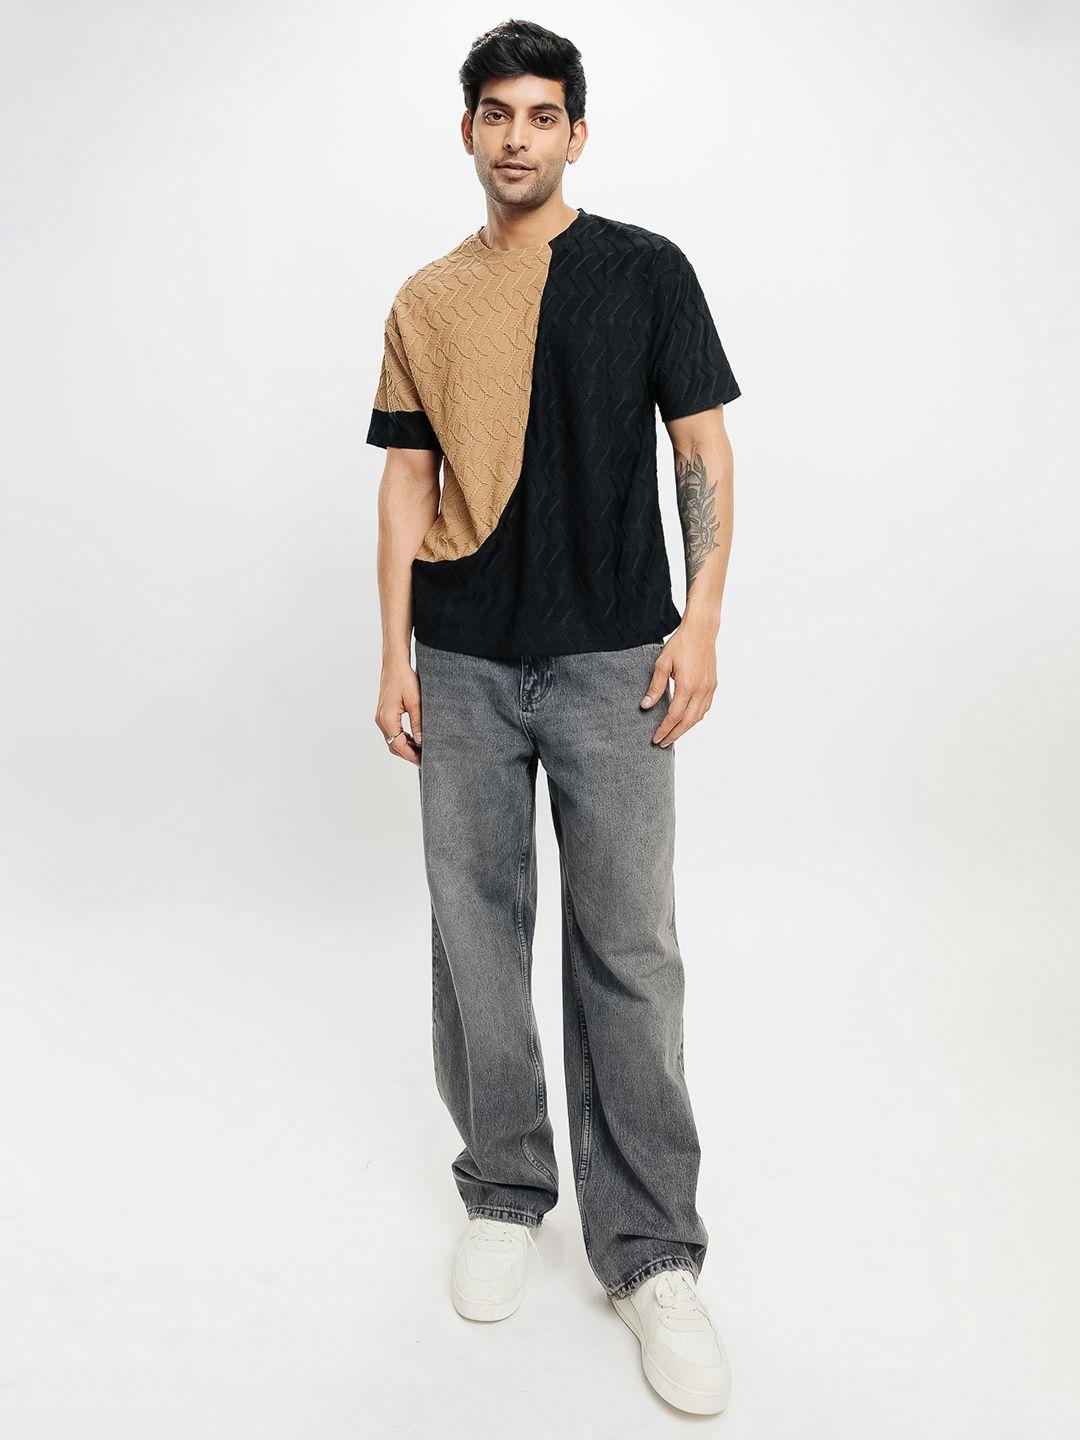 freakins-men-colourblocked-v-neck-extended-sleeves-pockets-t-shirt